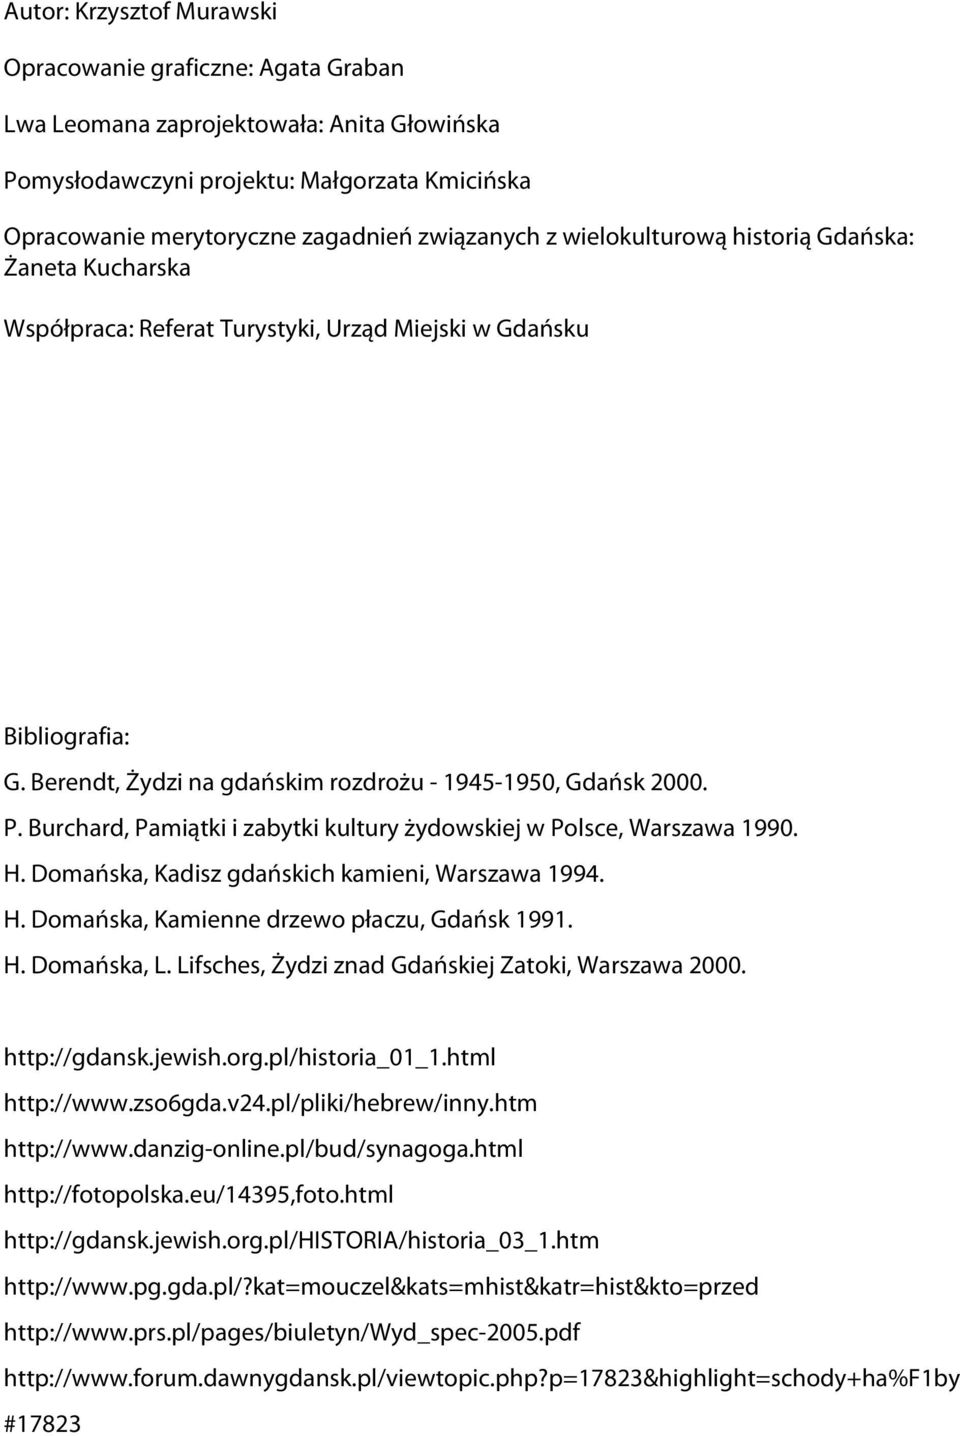 Burchard, Pamiątki i zabytki kultury żydowskiej w Polsce, Warszawa 1990. H. Domańska, Kadisz gdańskich kamieni, Warszawa 1994. H. Domańska, Kamienne drzewo płaczu, Gdańsk 1991. H. Domańska, L.